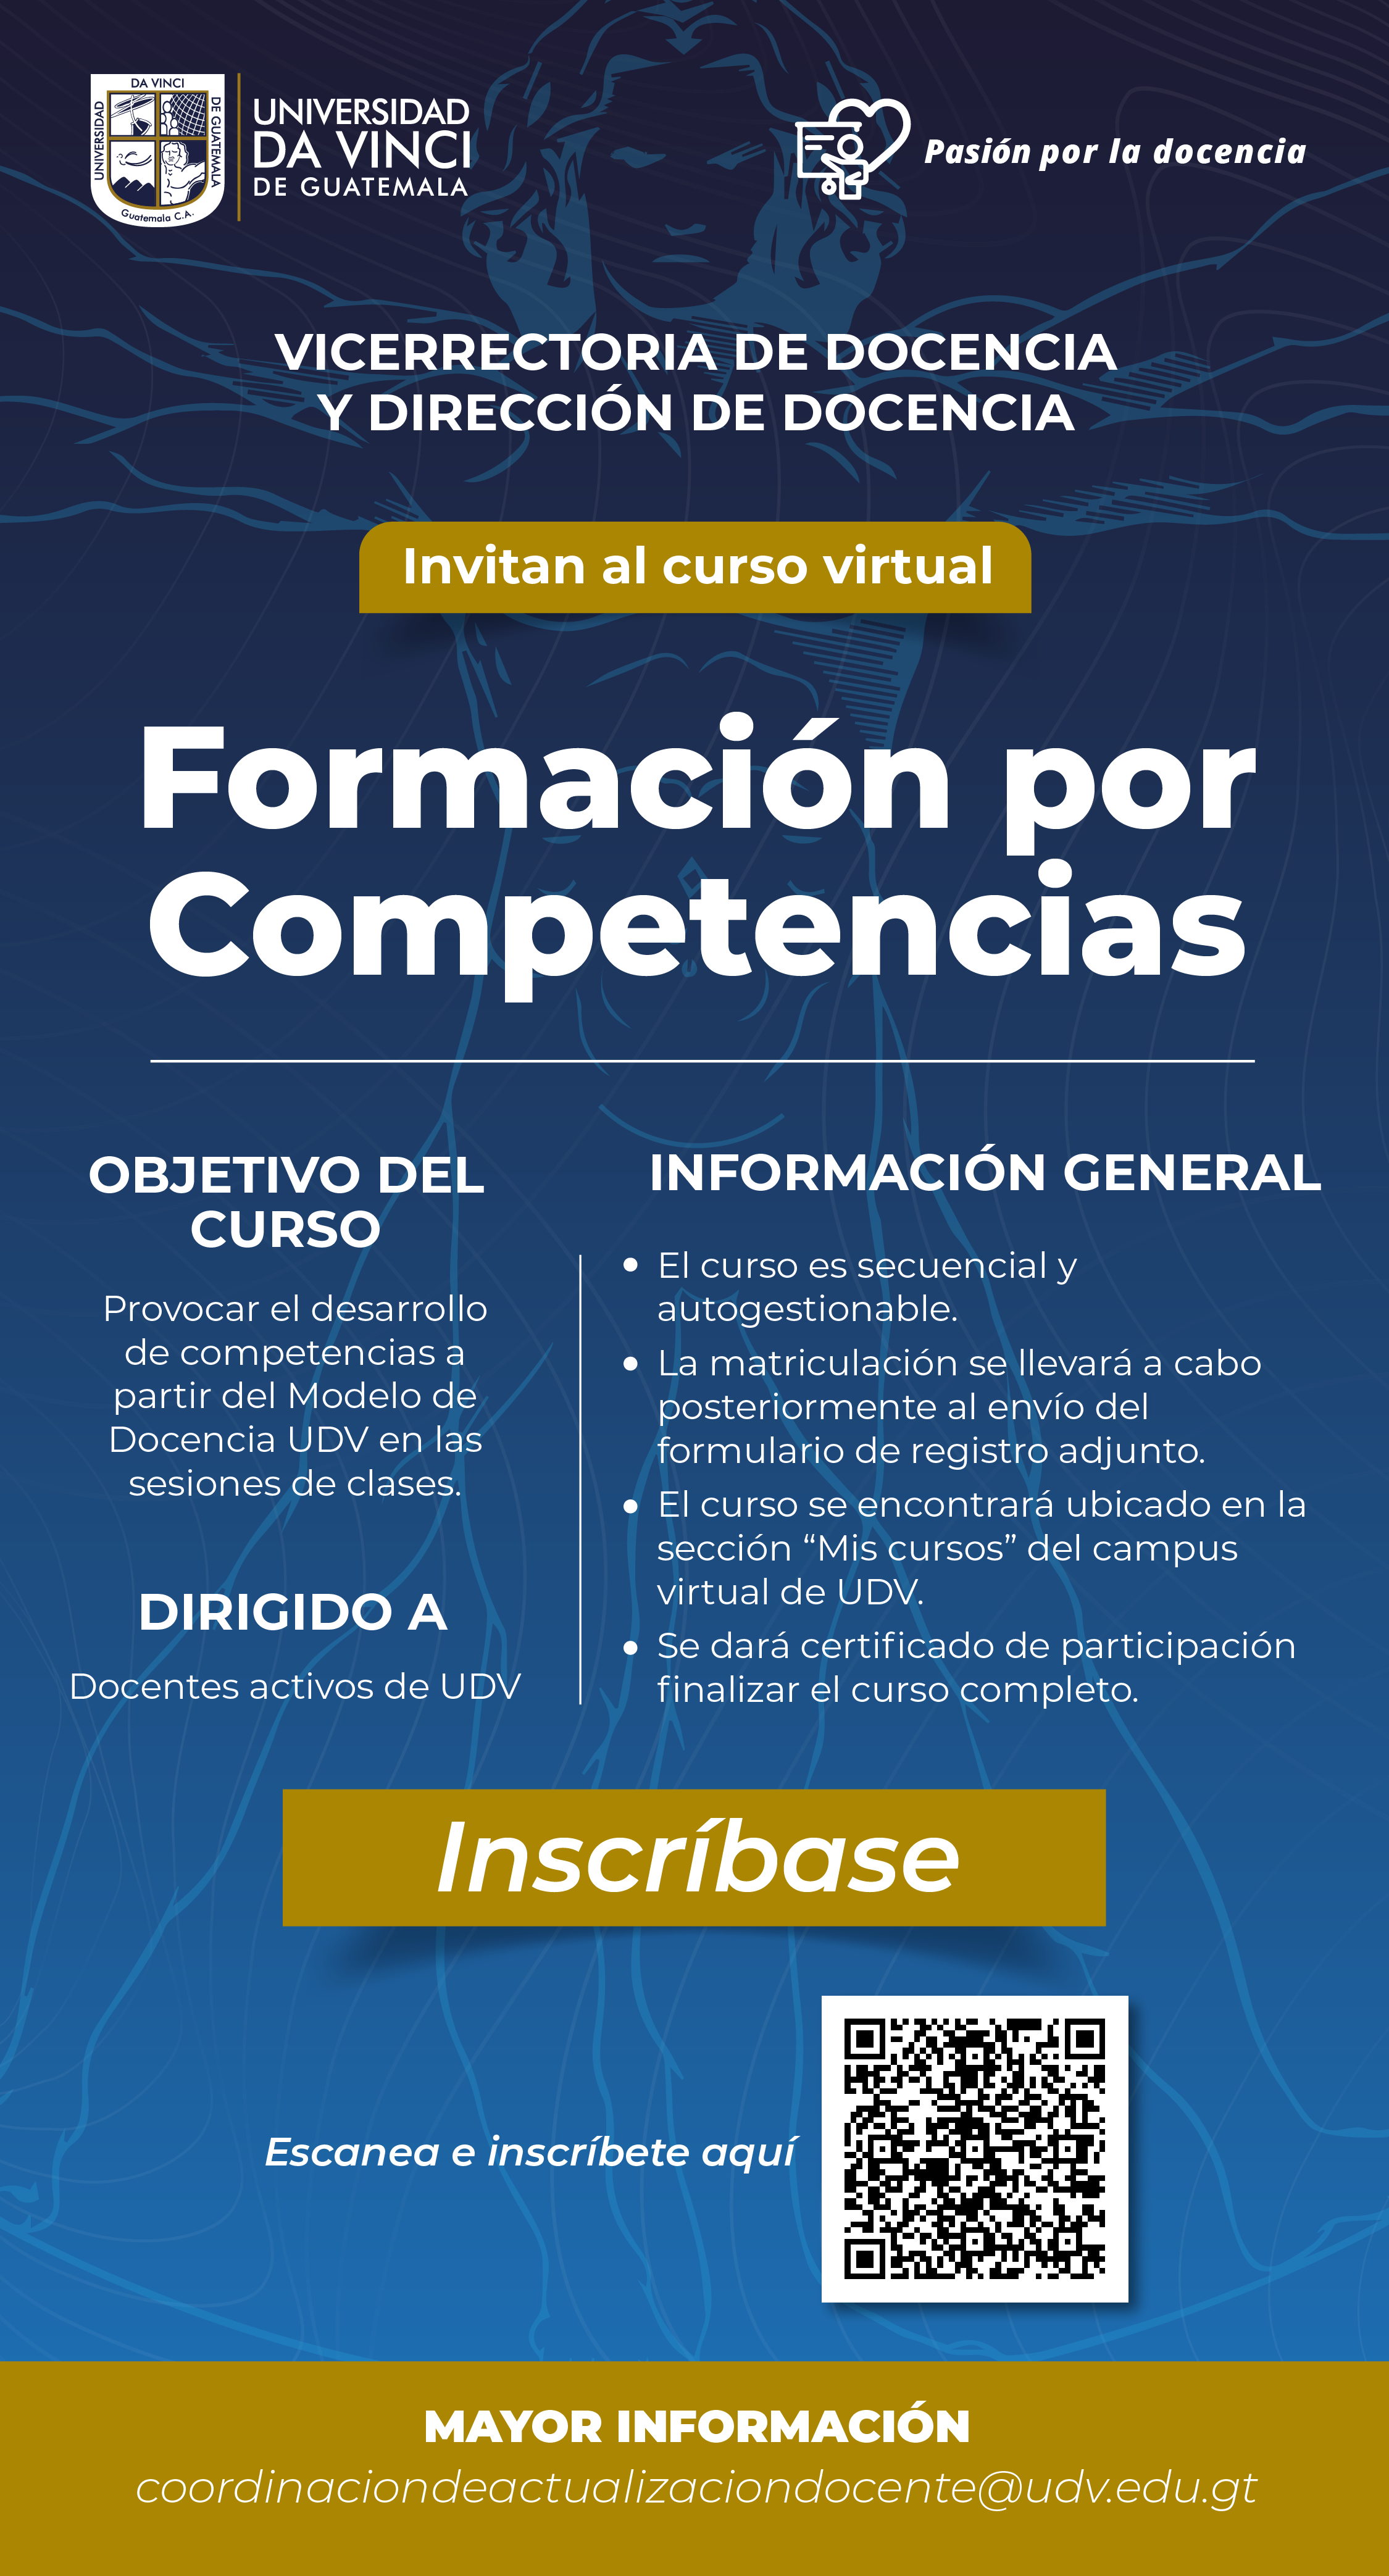 Formación por Competencias | Universidad da Vinci de Guatemala